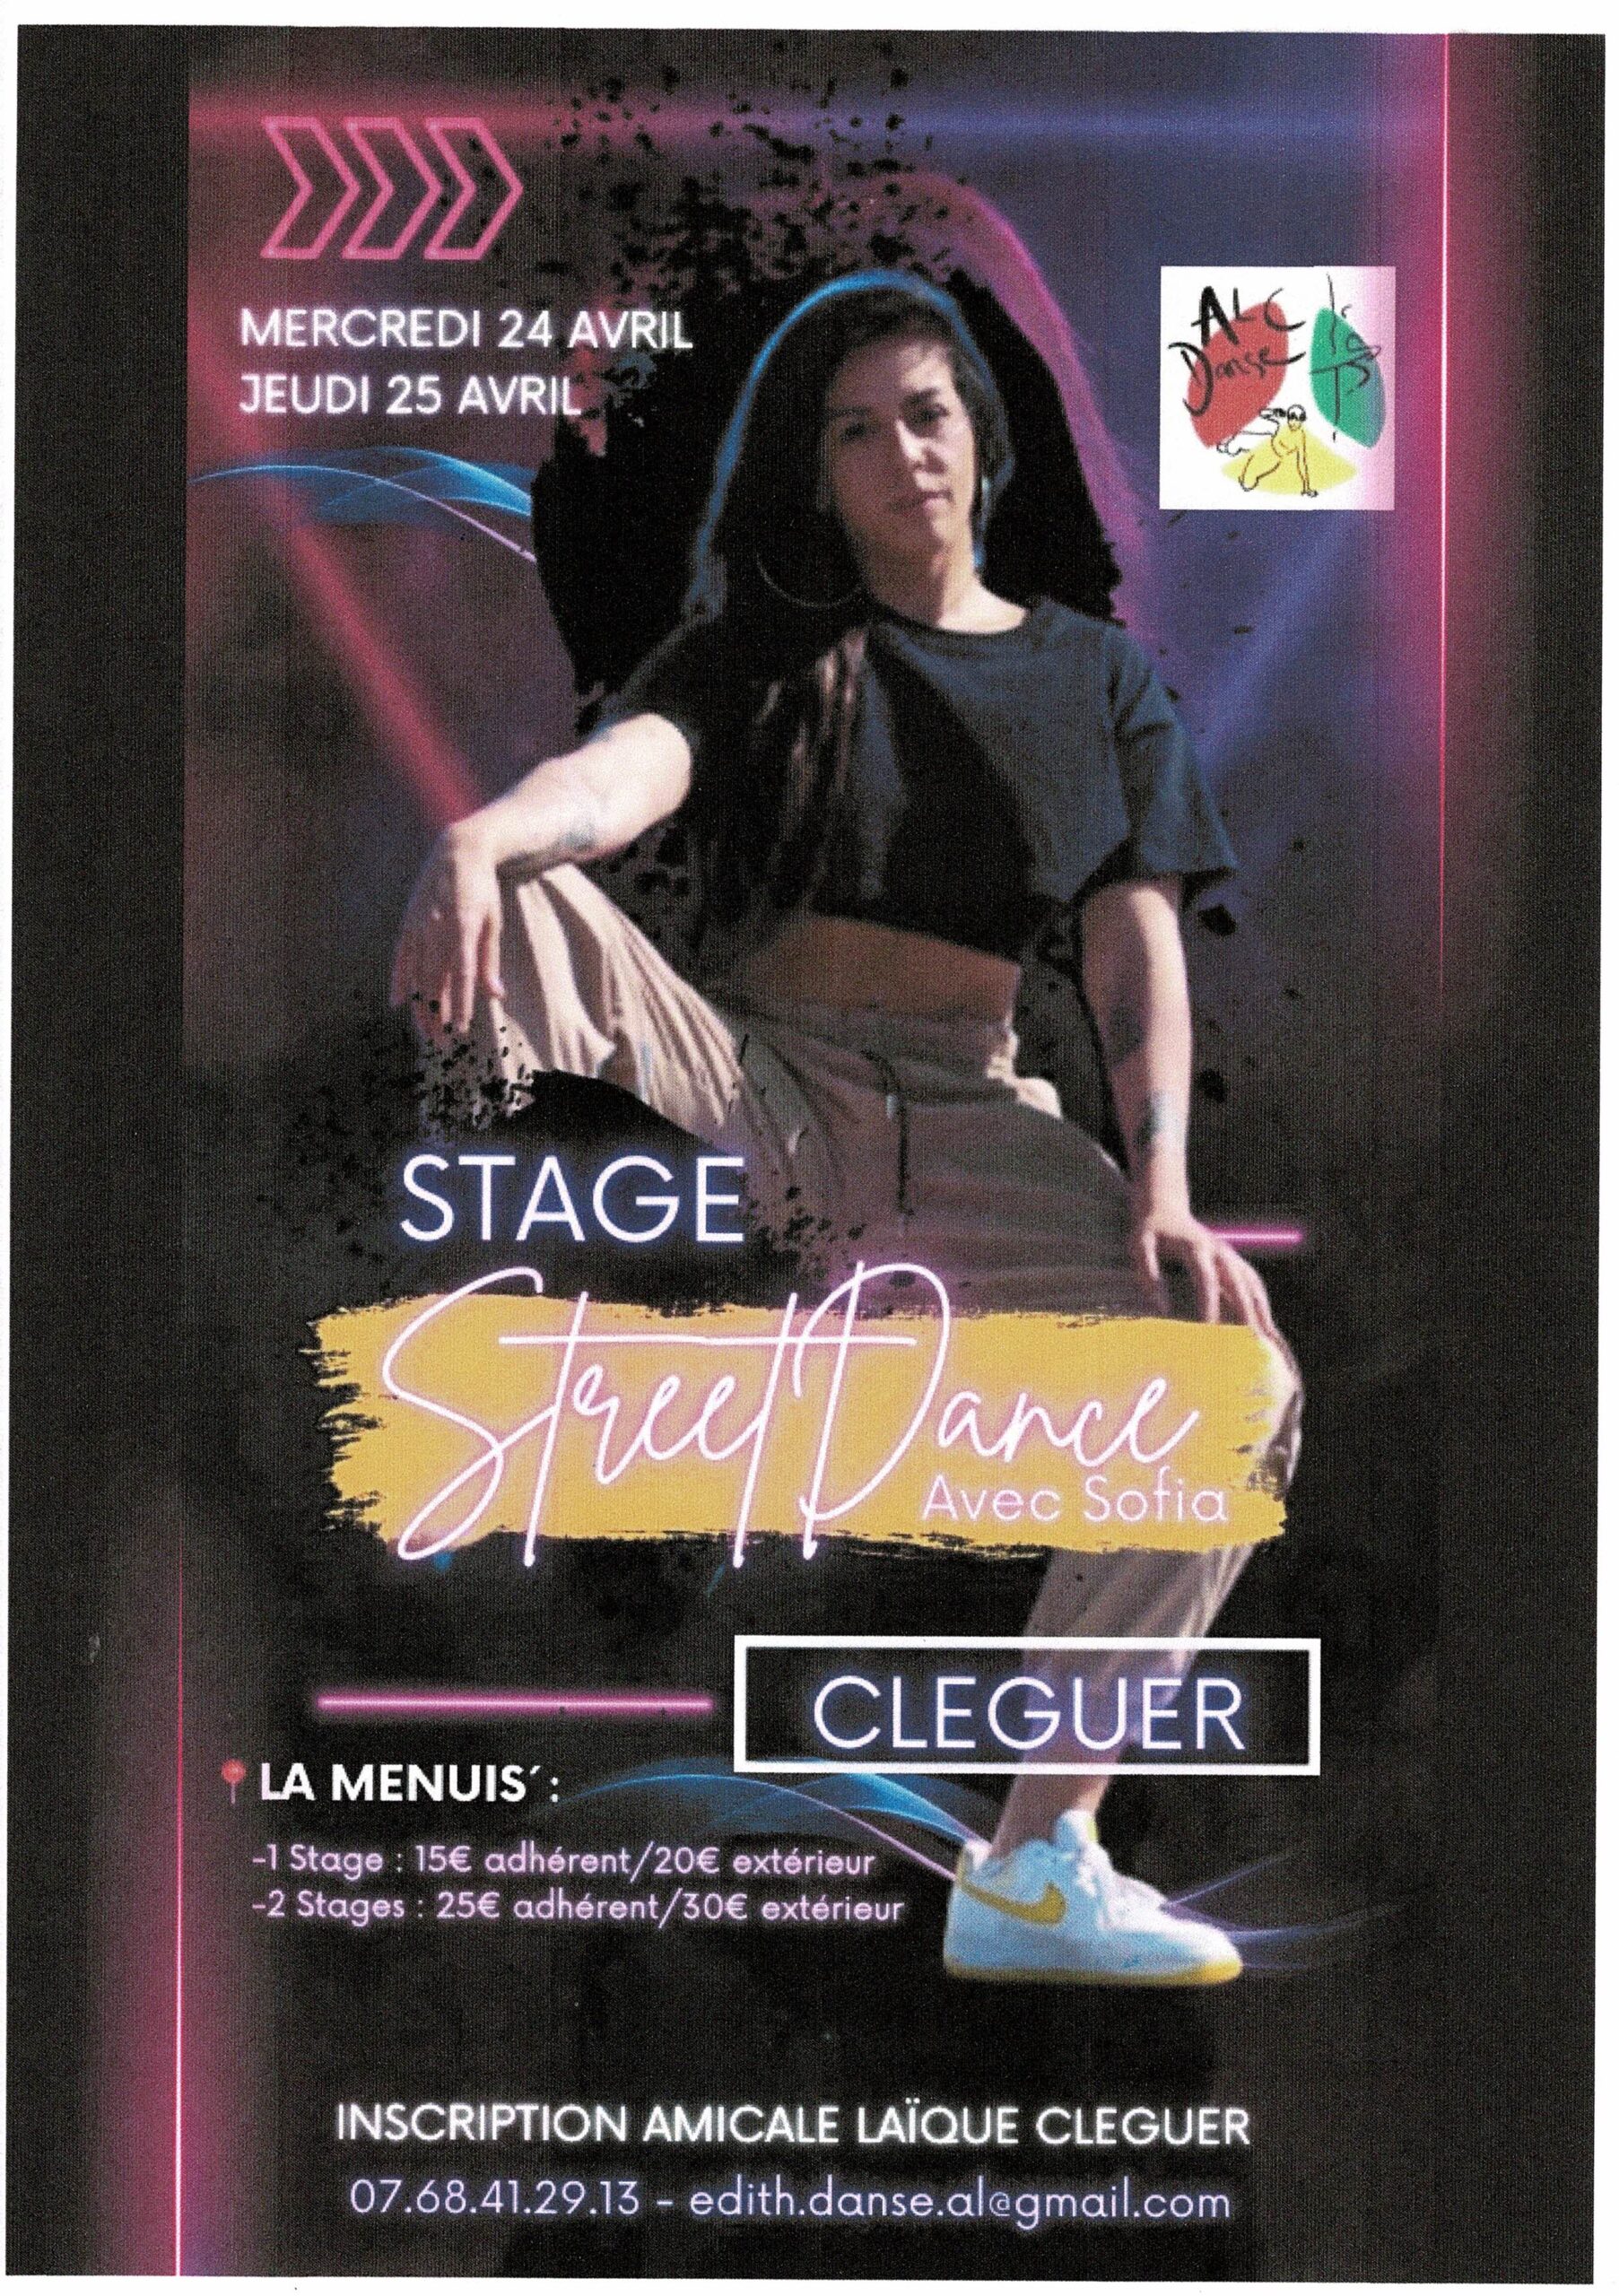 Stage Street Dance avec Sofia à la salle La Menuis' les 24 et 25 avril